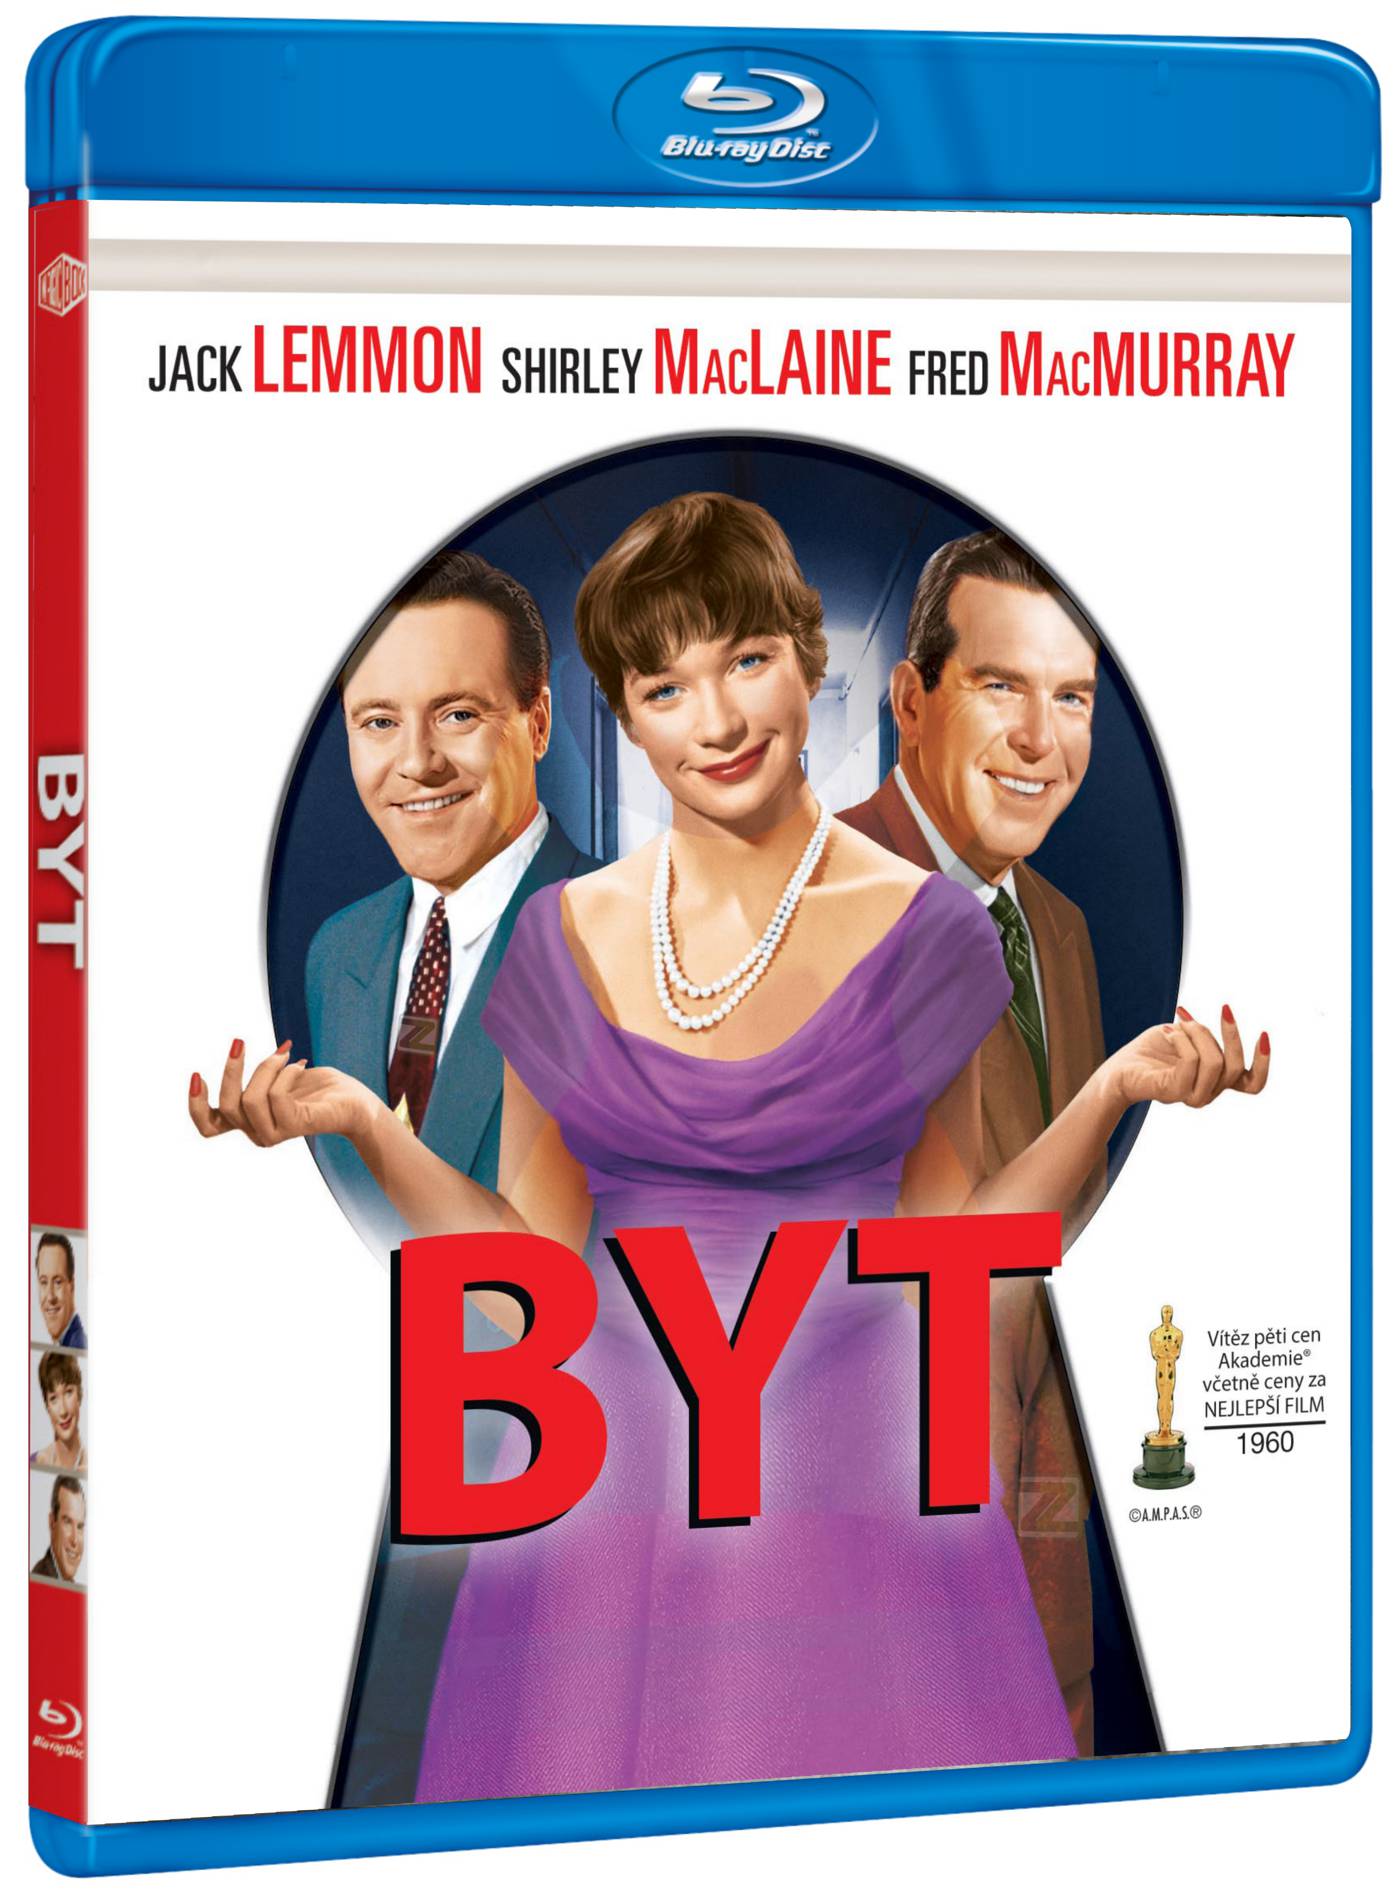 Byt - Blu-ray